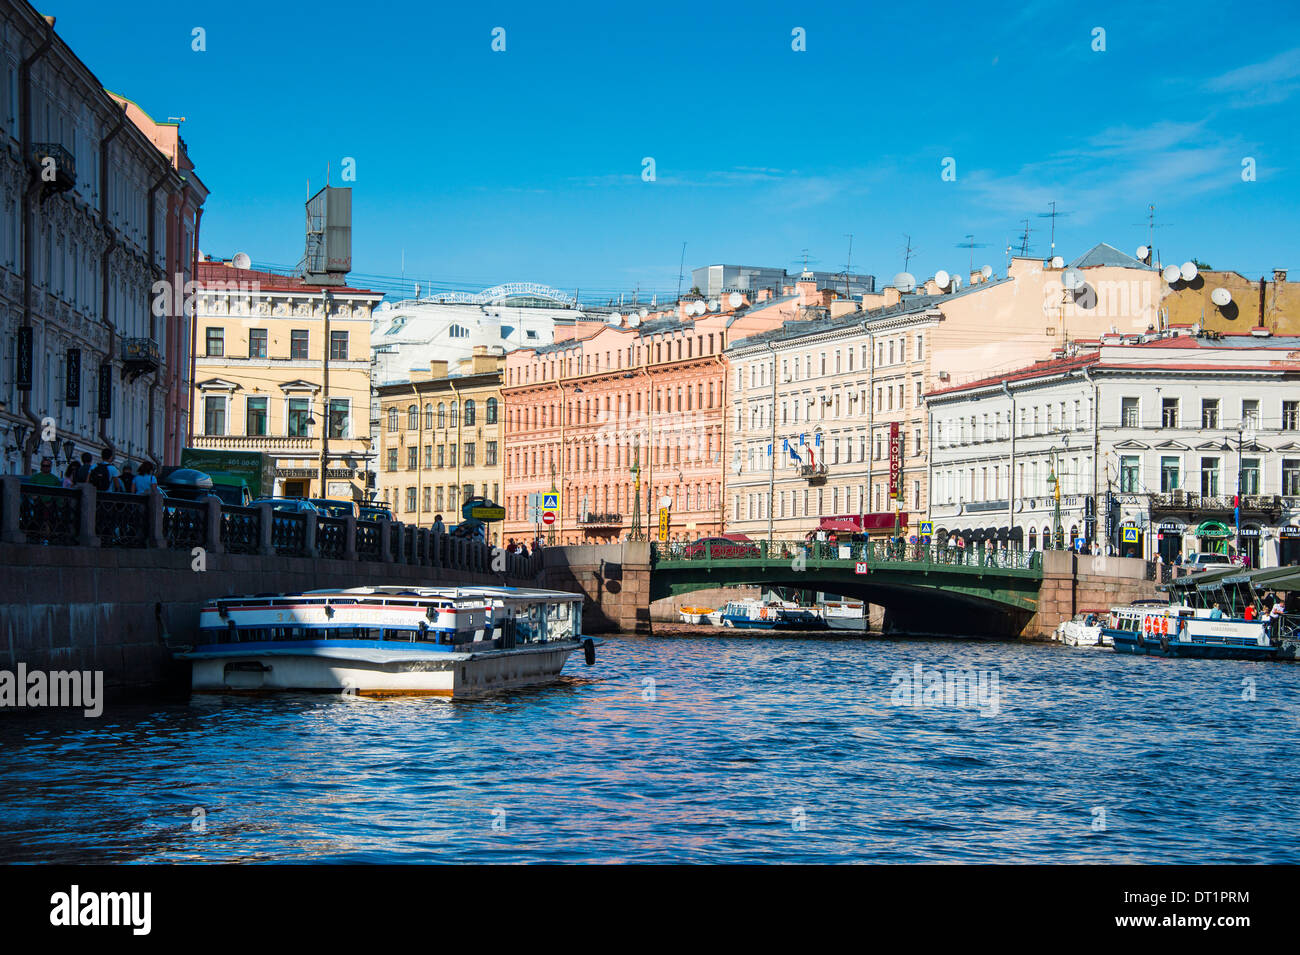 Touristenboot auf einem Wasserkanal im Zentrum von St. Petersburg, Russland, Europa Stockfoto